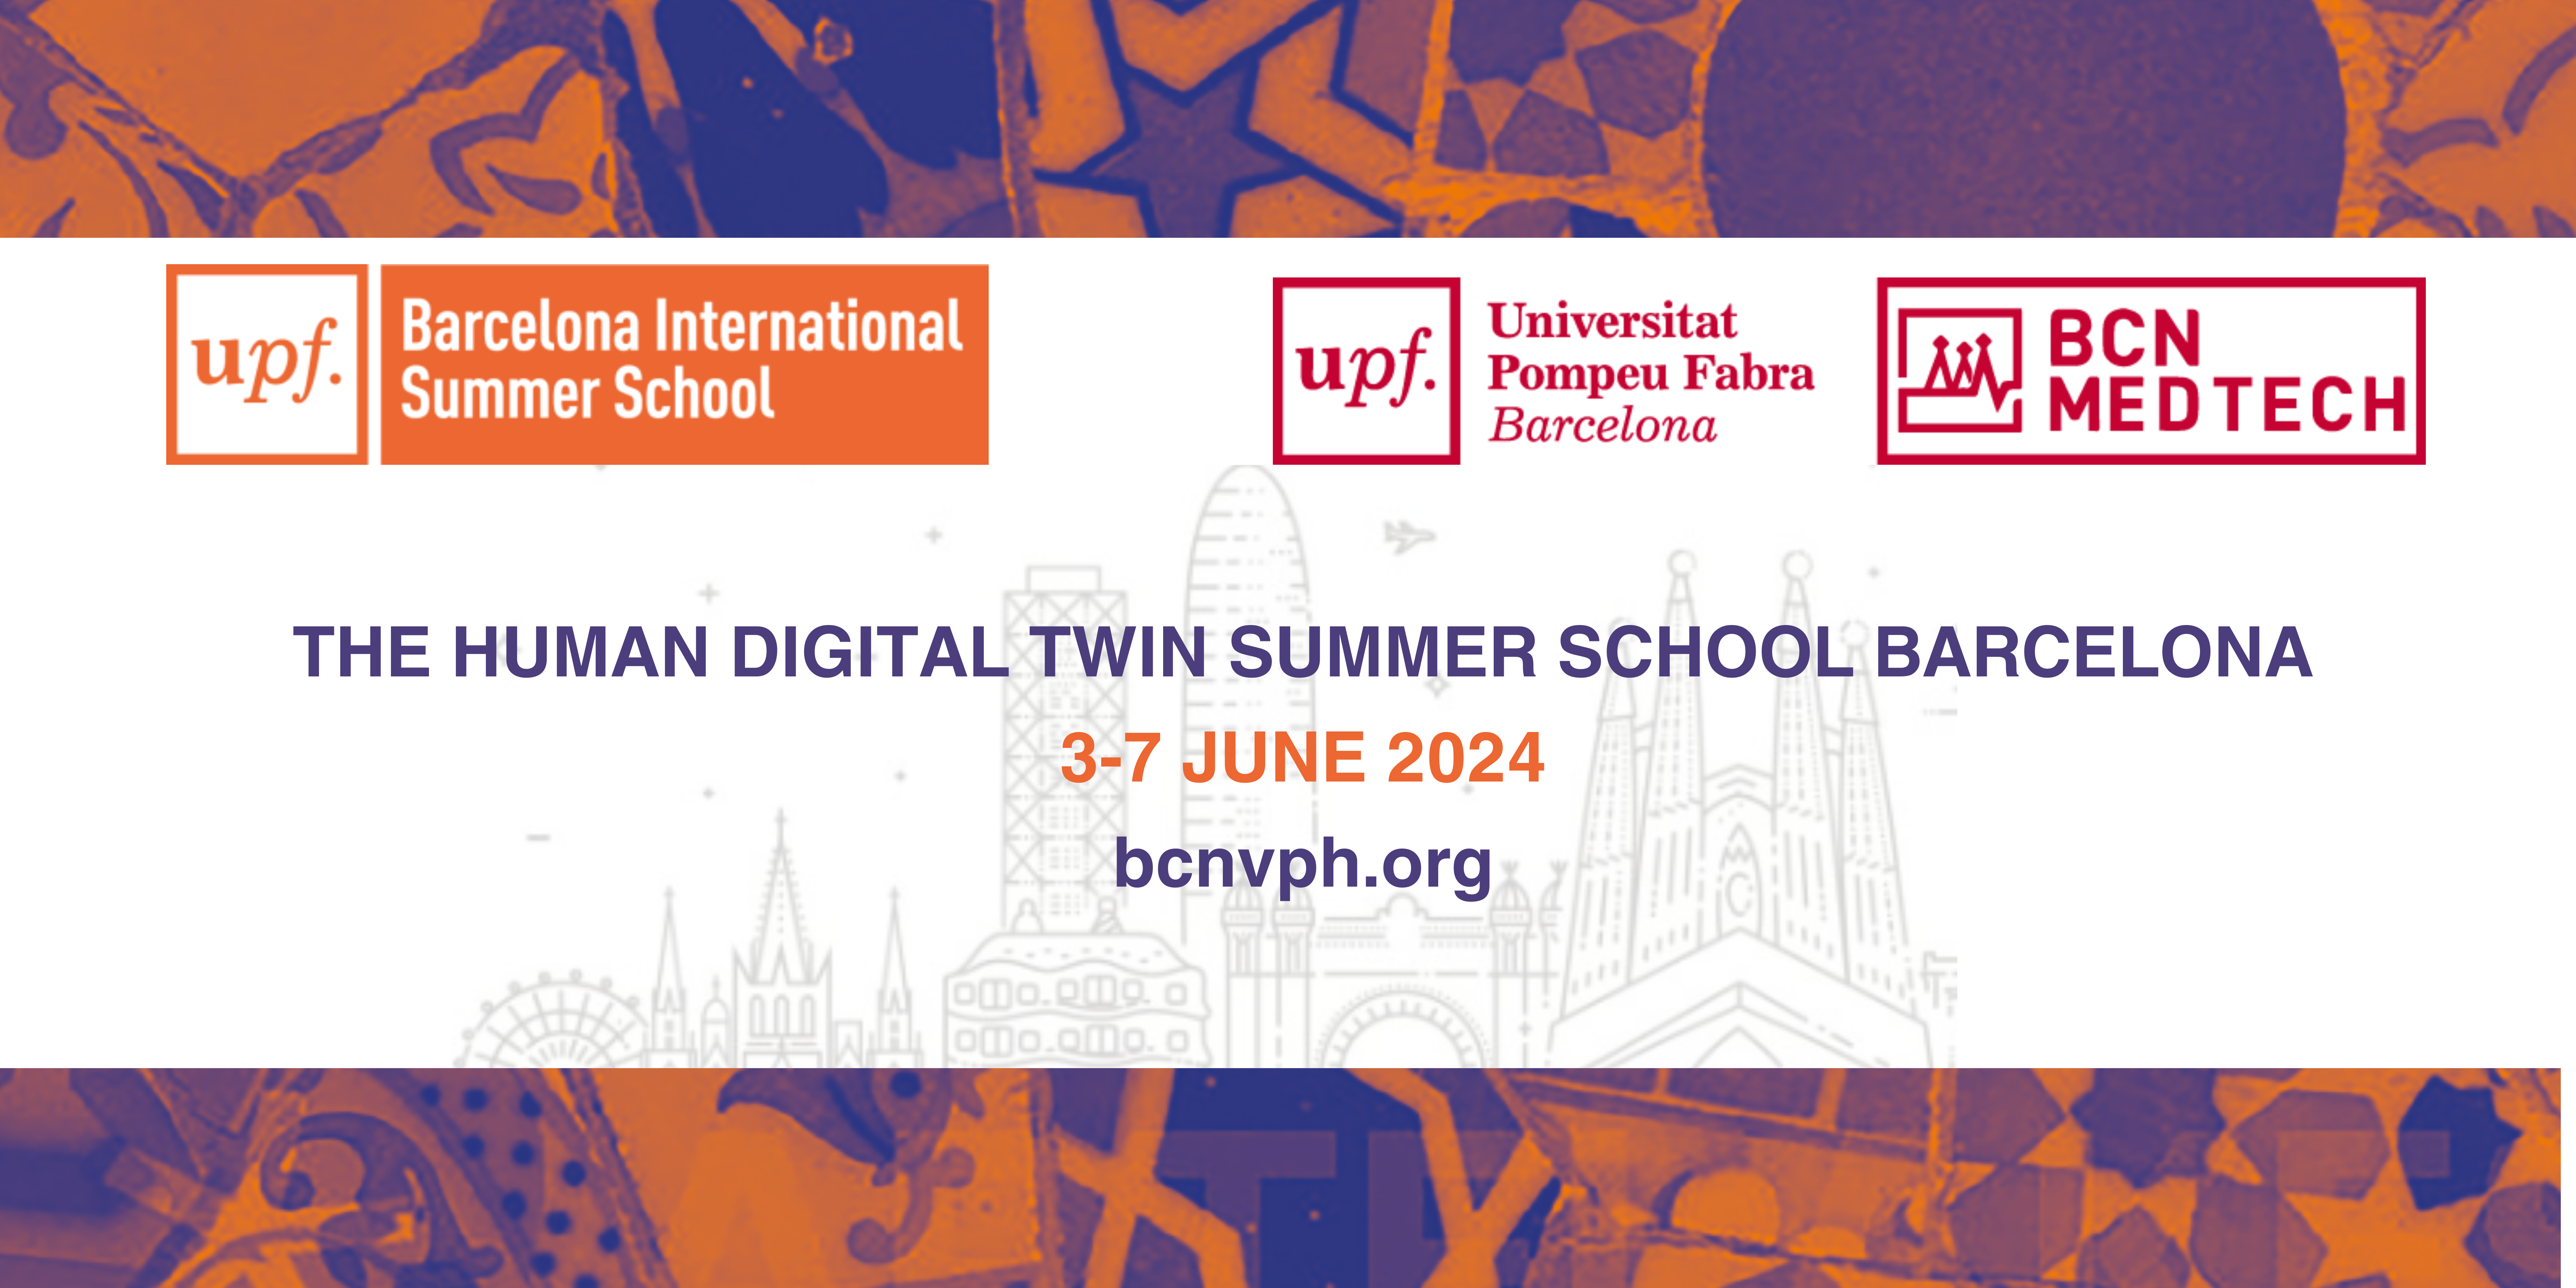 The Human Digital Twin Summer School Barcelona